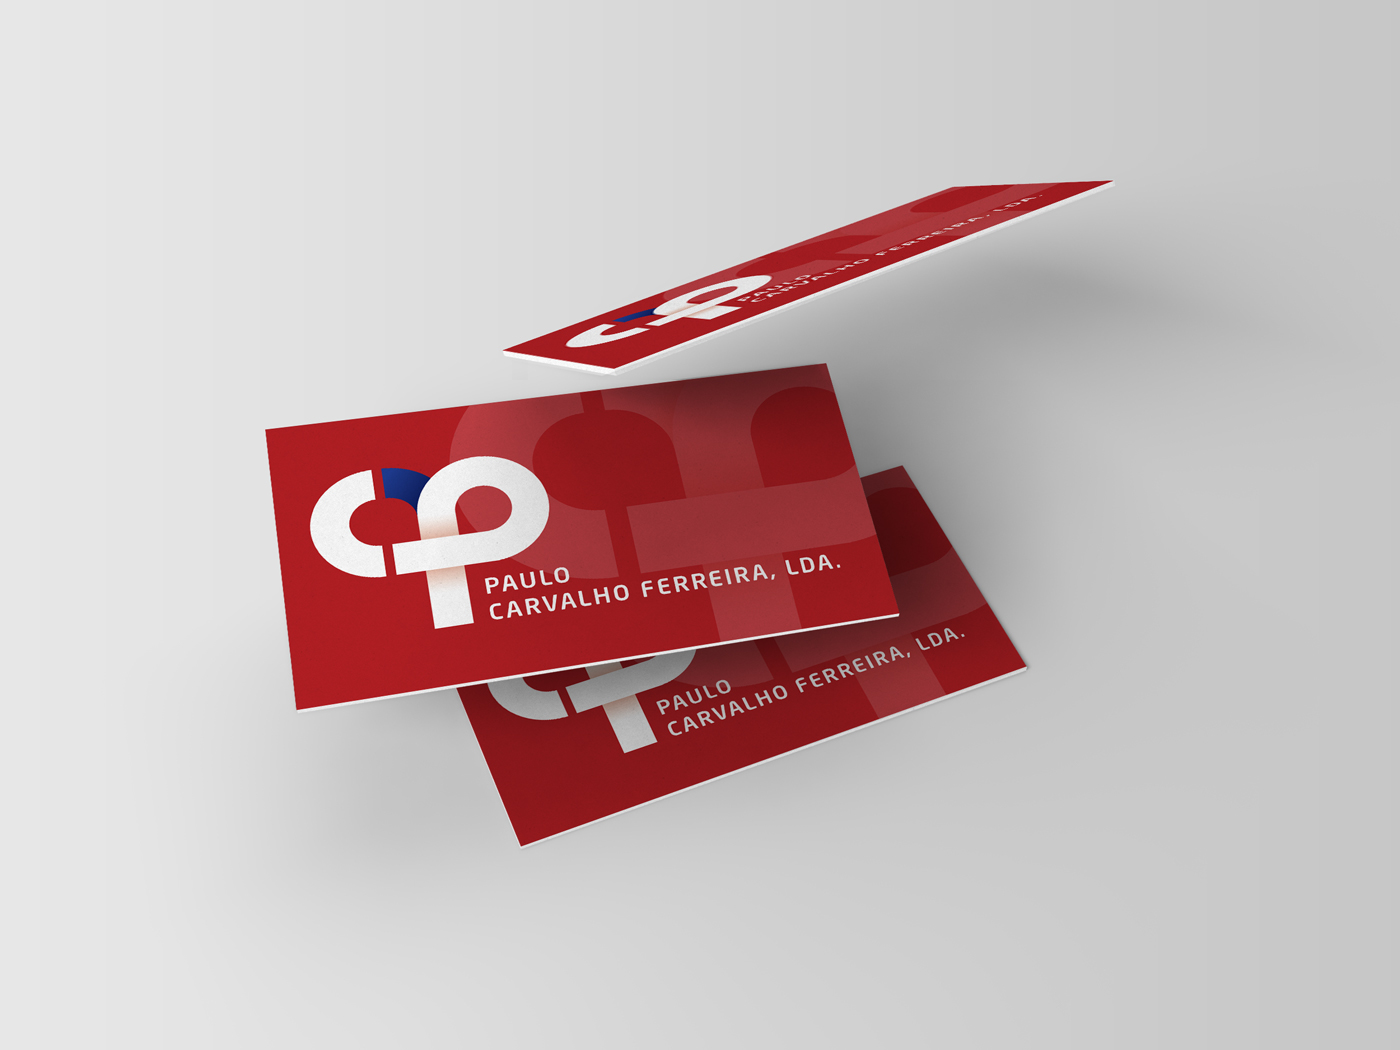 logo Logotipo Imagem Coorporativa corporate image cartão visita business card stationary envelopes papel carta